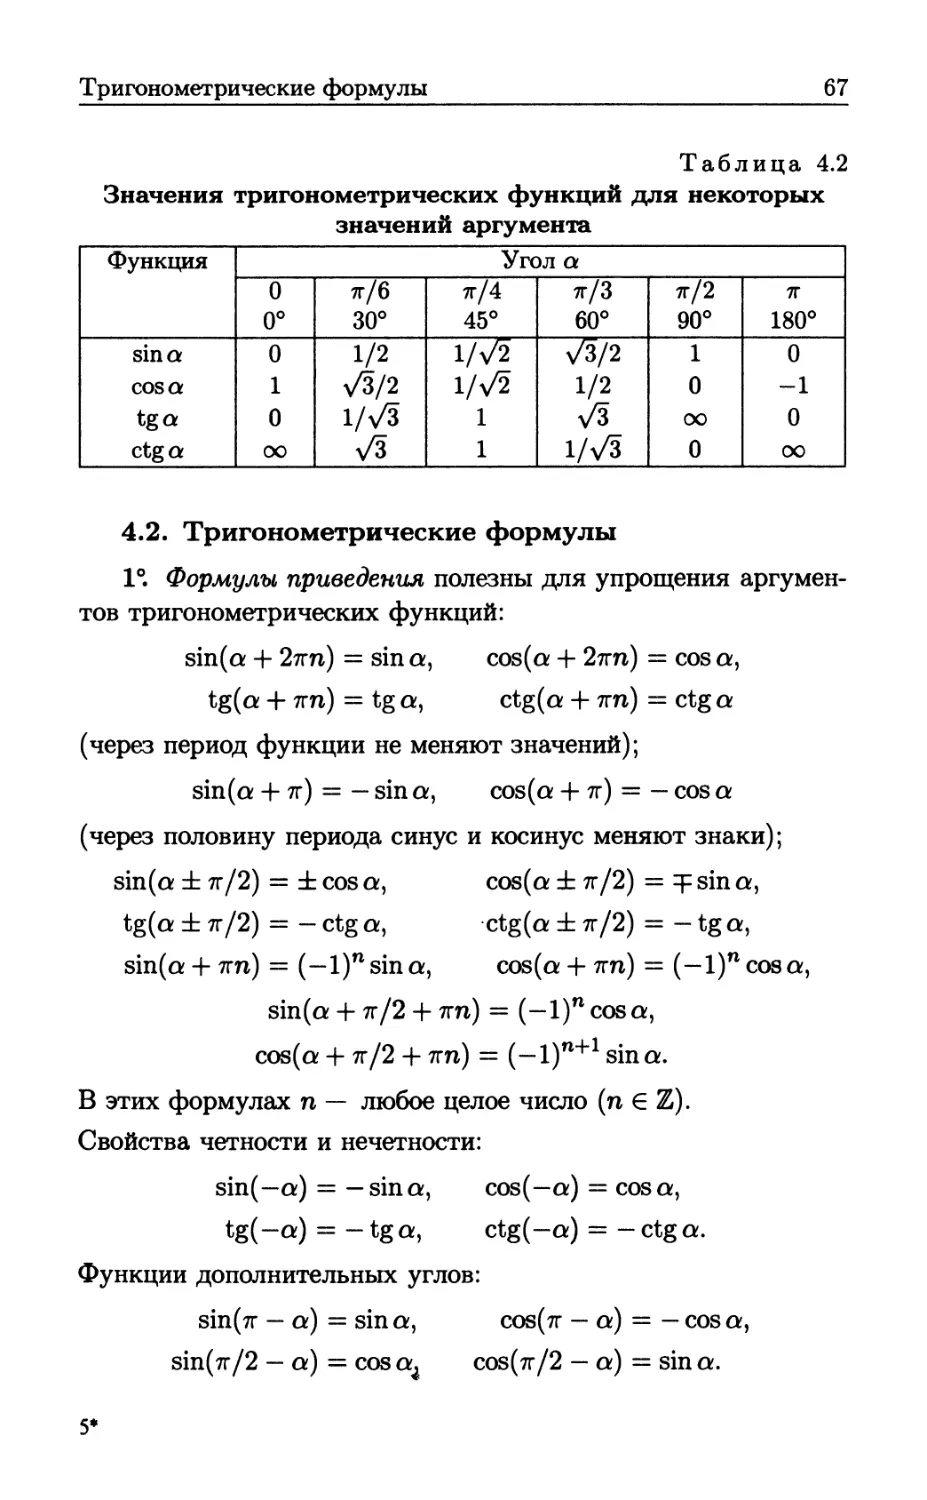 4.2. Тригонометрические формулы